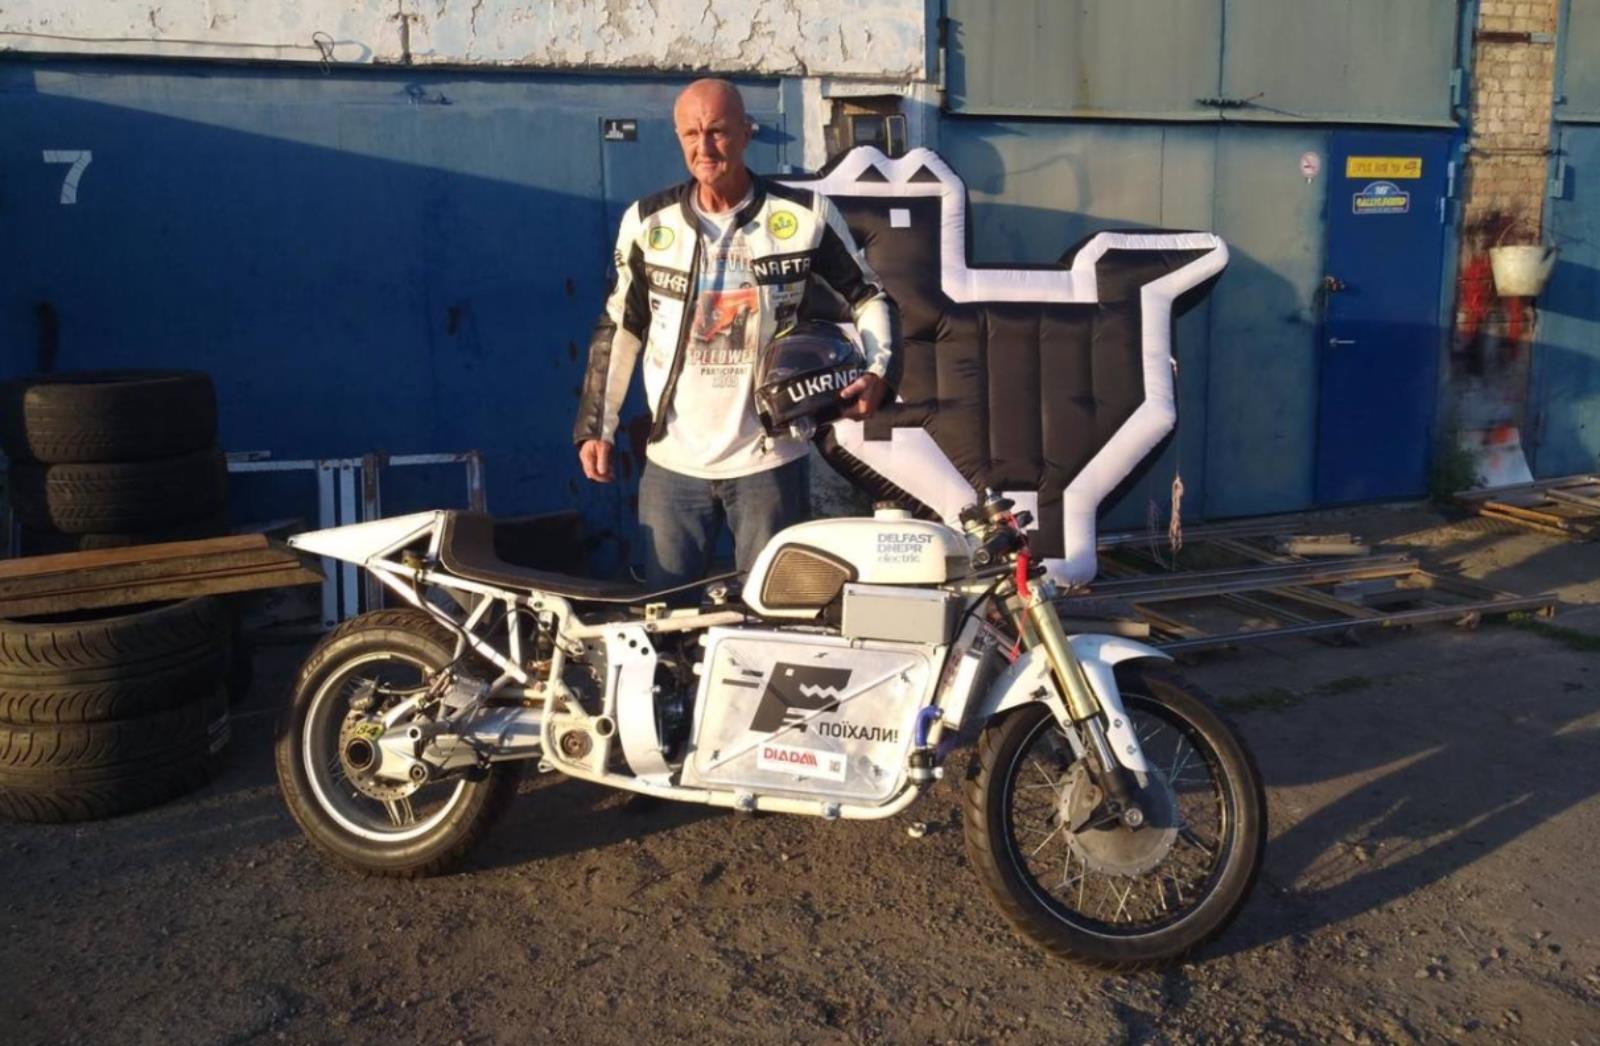 Elektryczny motocykl Delfast Dnepr rozwinął rekordową prędkość. Szanse na wersje produkcyjną?